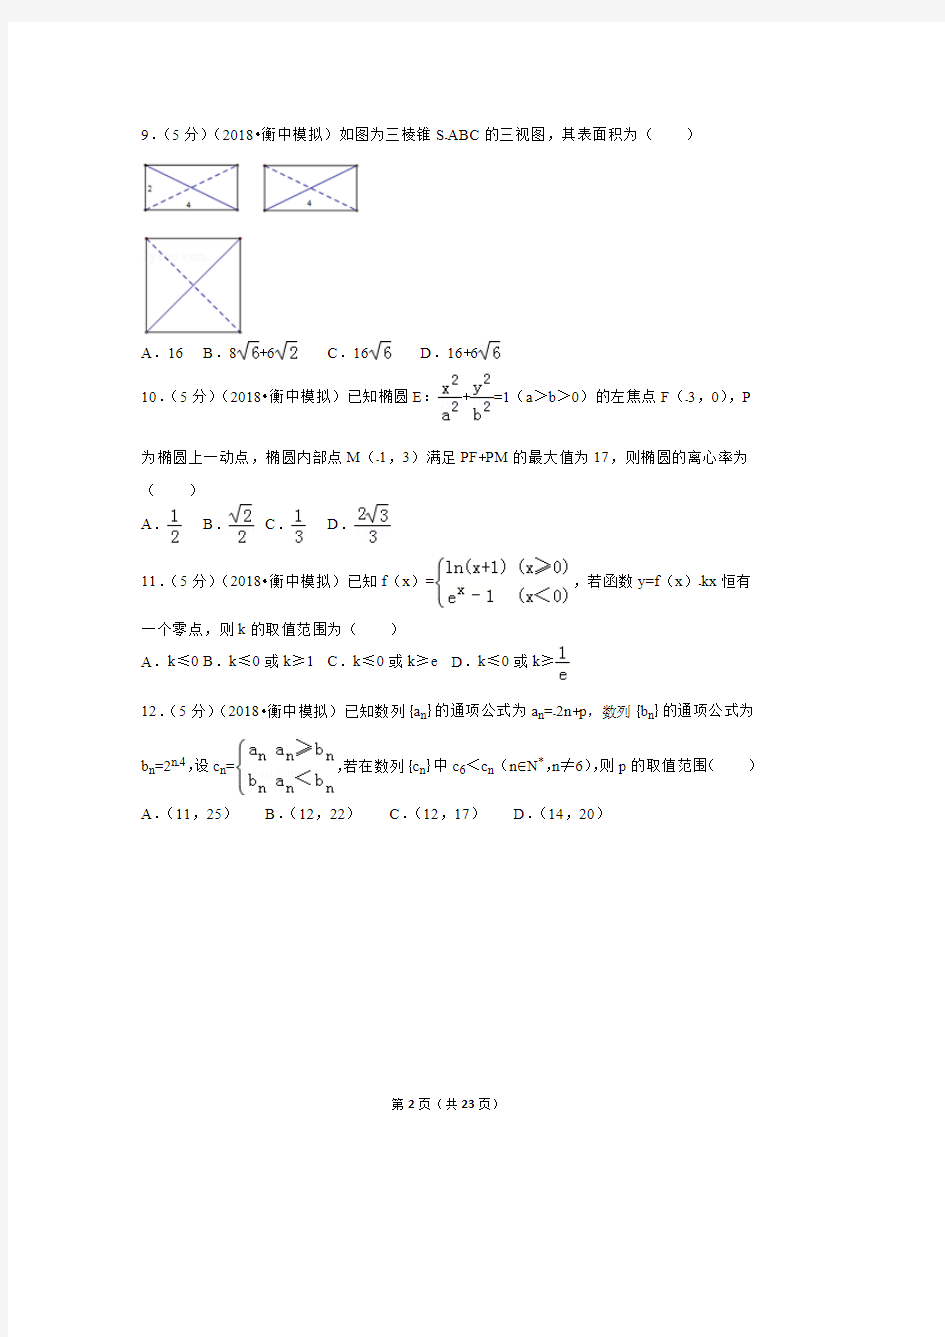 2018高考数学模拟试卷(衡水中学理科)(最新整理)